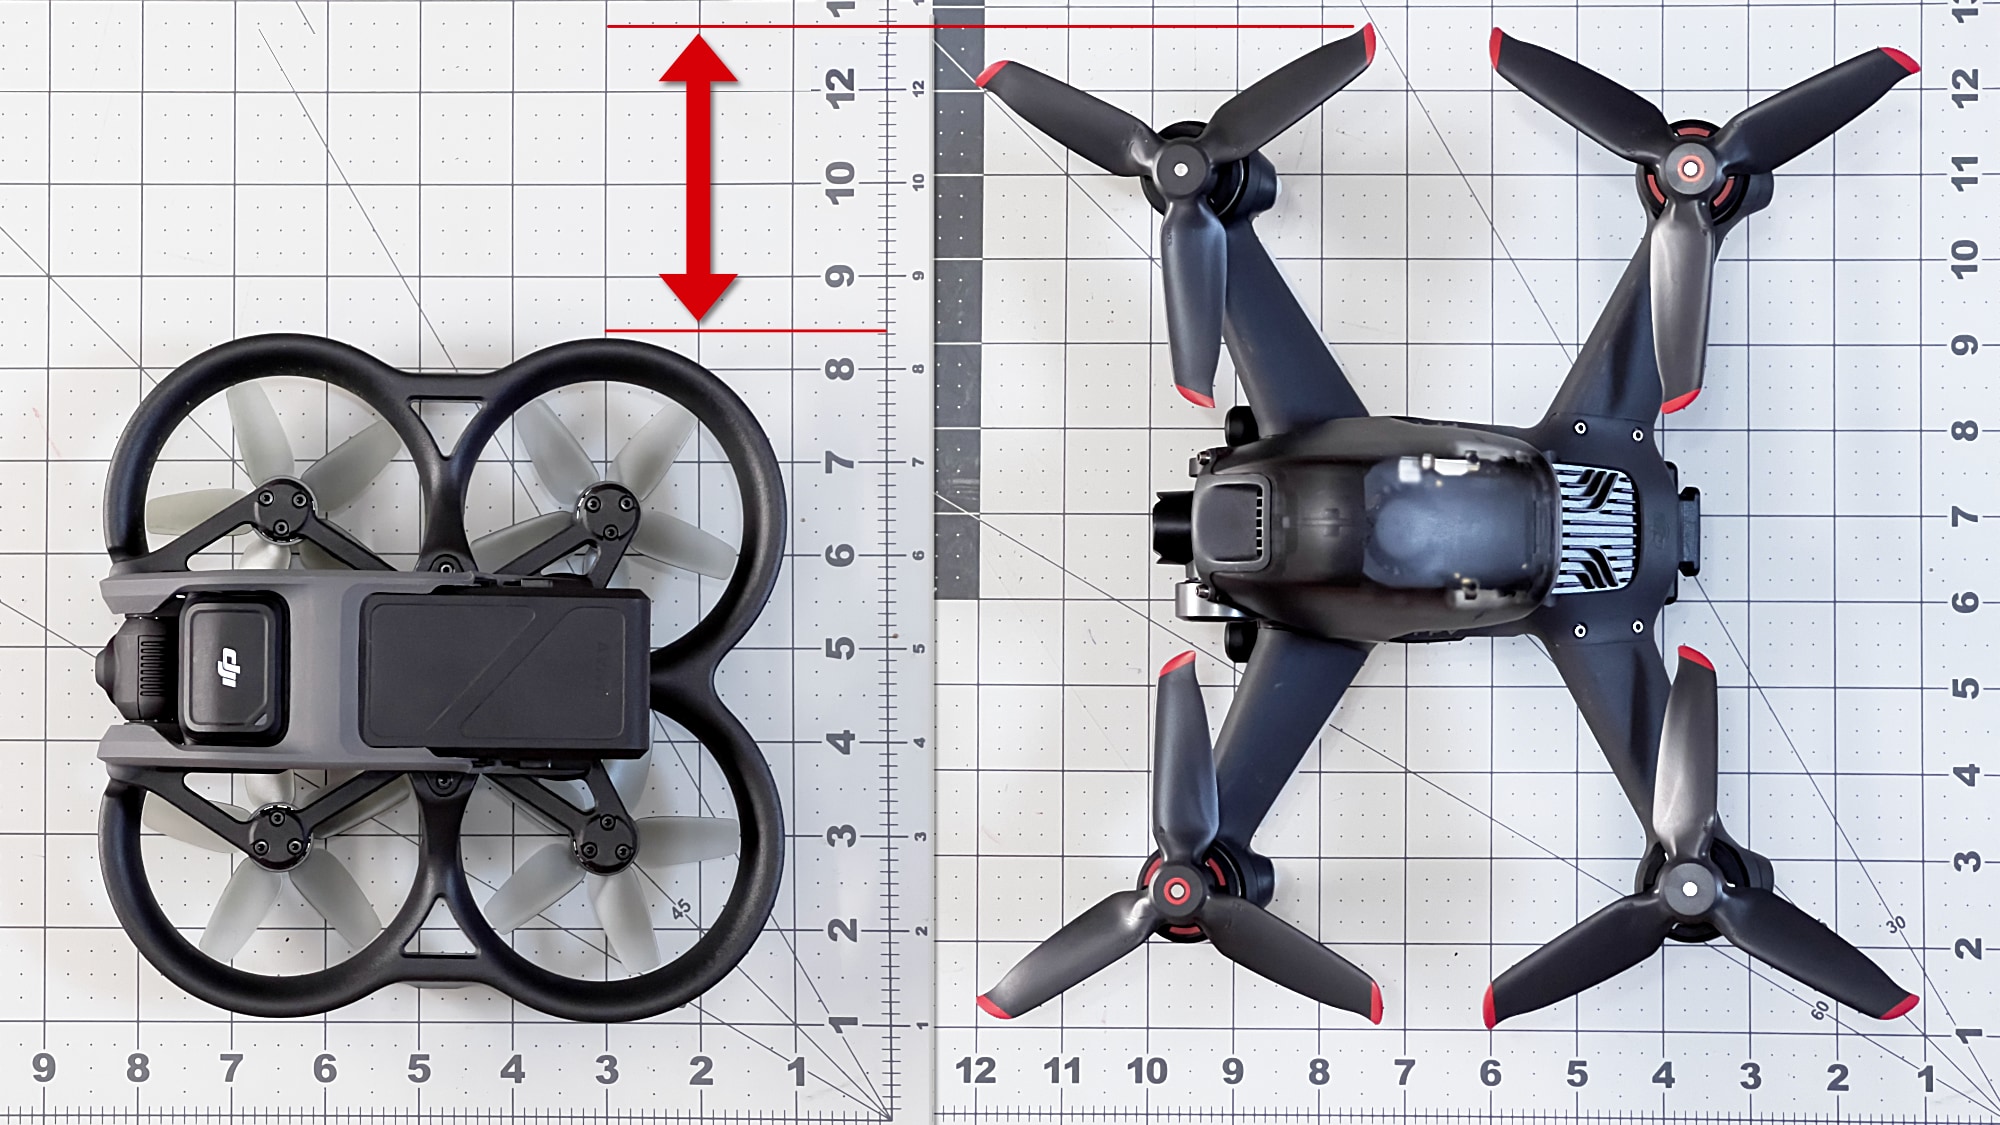 DJI Avata drone, DJI FPV drone, new from DJI 